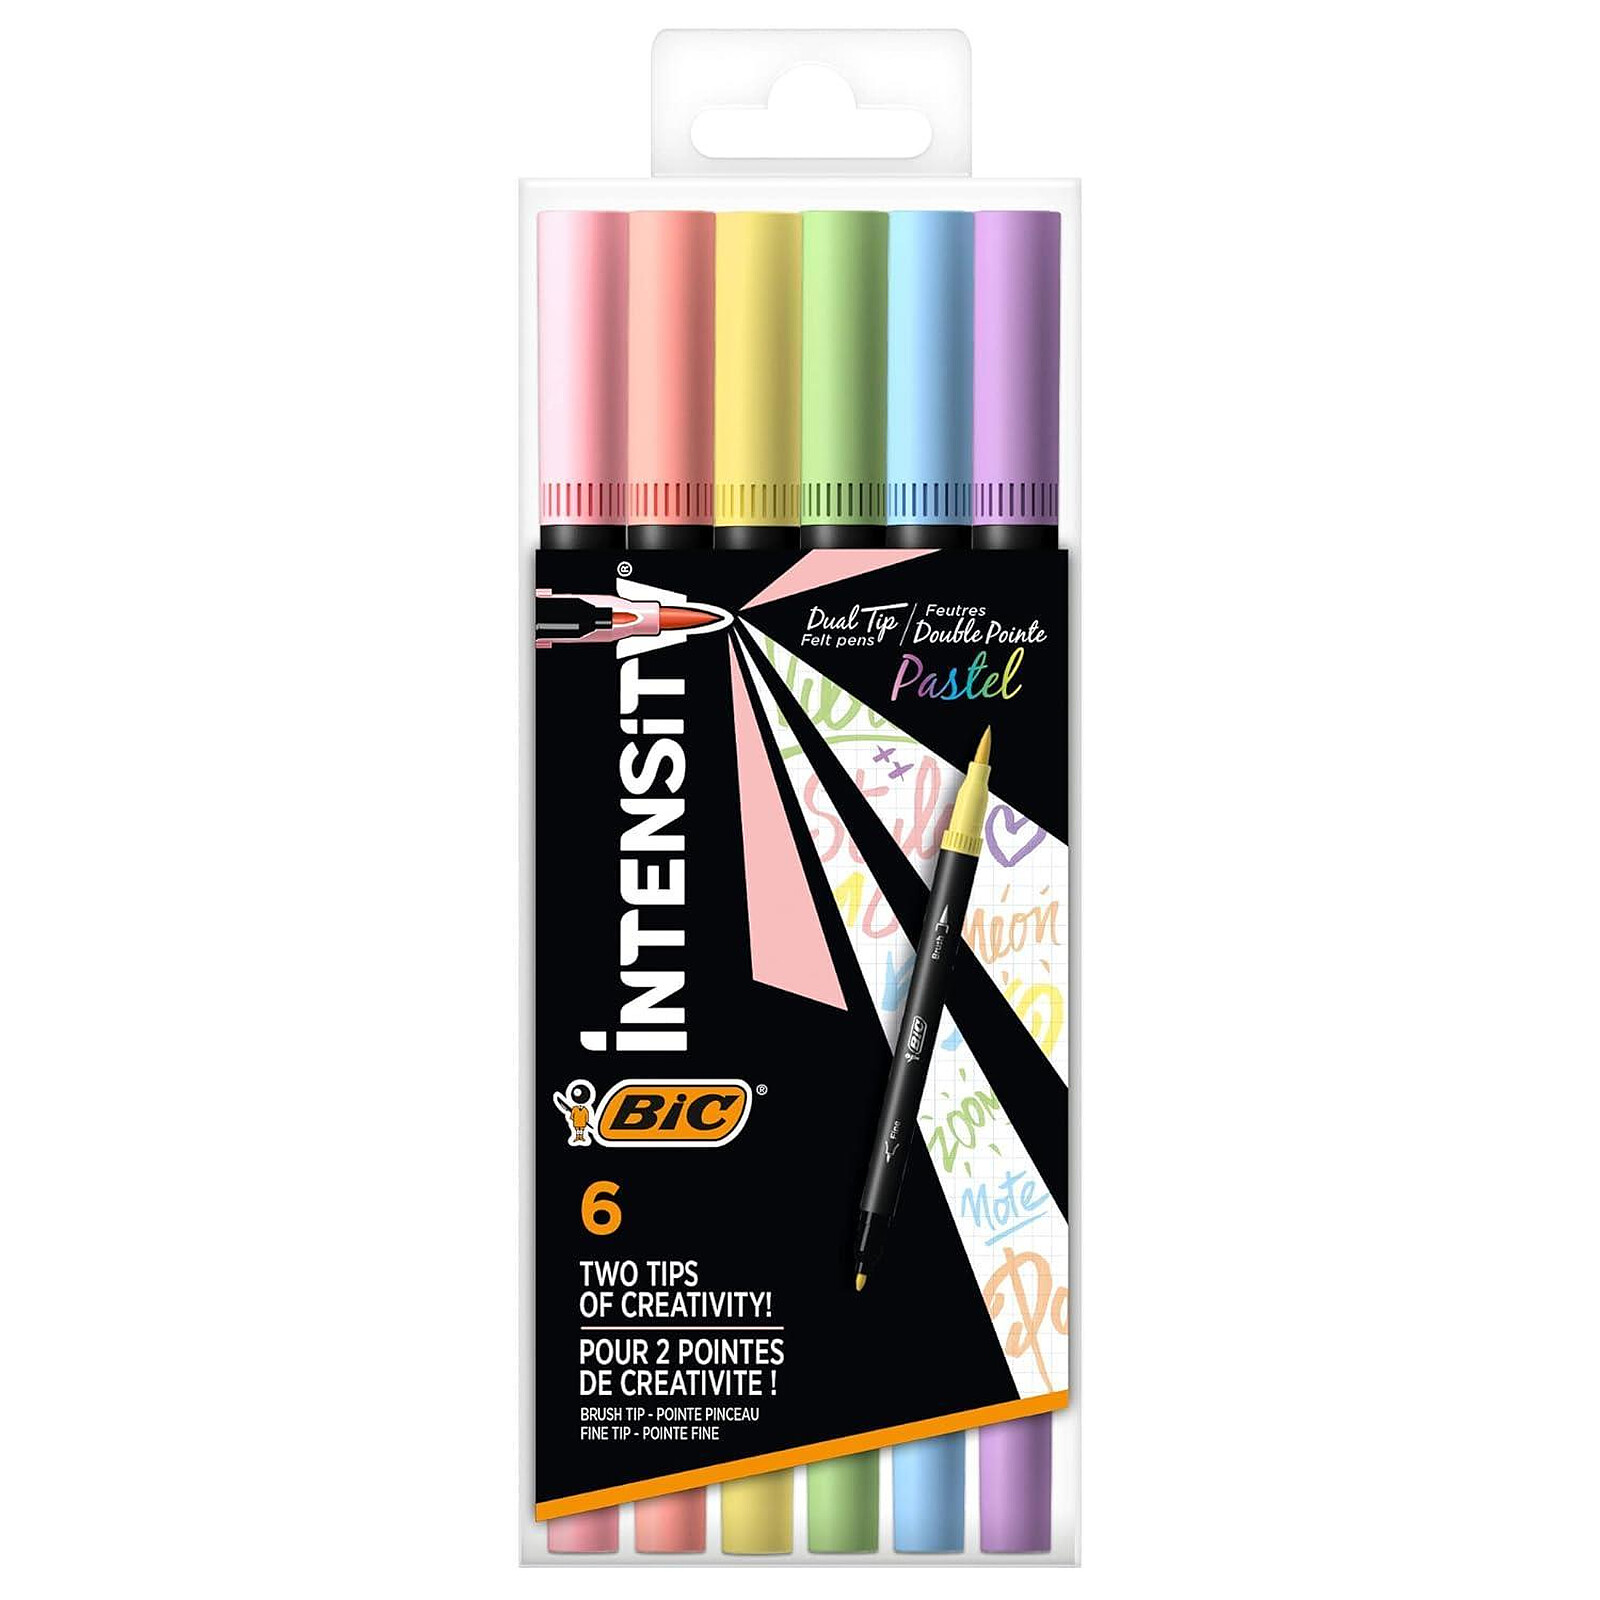 Crayons de couleur BIC Intensity Premium pour ad…